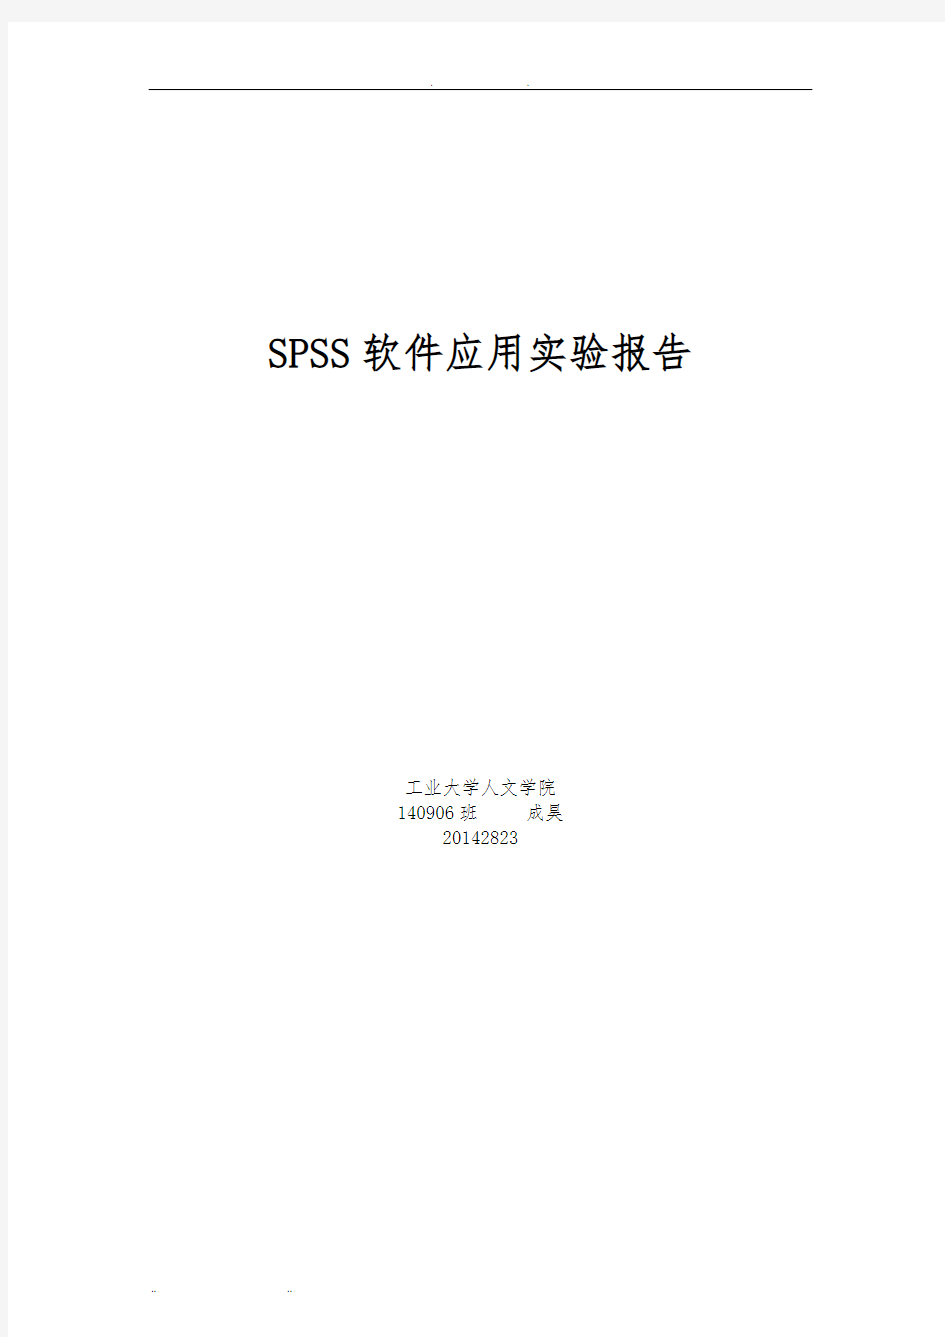 SPSS实验报告62564